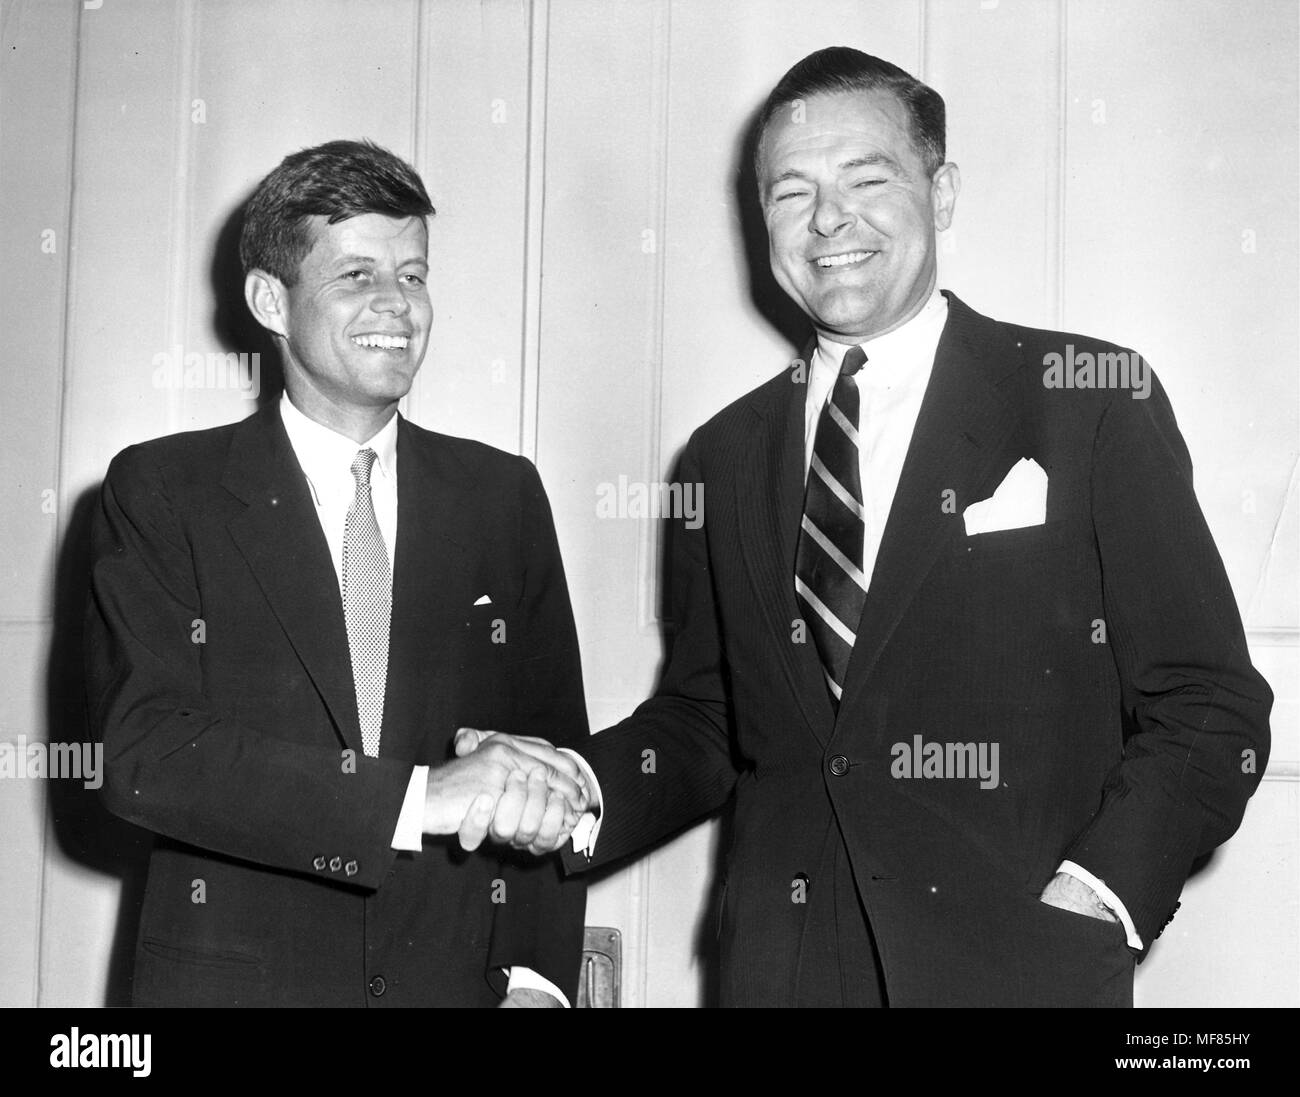 PC 473 10 Nov 1952 Kongressabgeordnete John F. Kennedy und Senator Henry Cabot Lodge Hände schütteln. Bitte schreiben Sie 'John F. Kennedy Presidential Library und Museum, Boston' Stockfoto